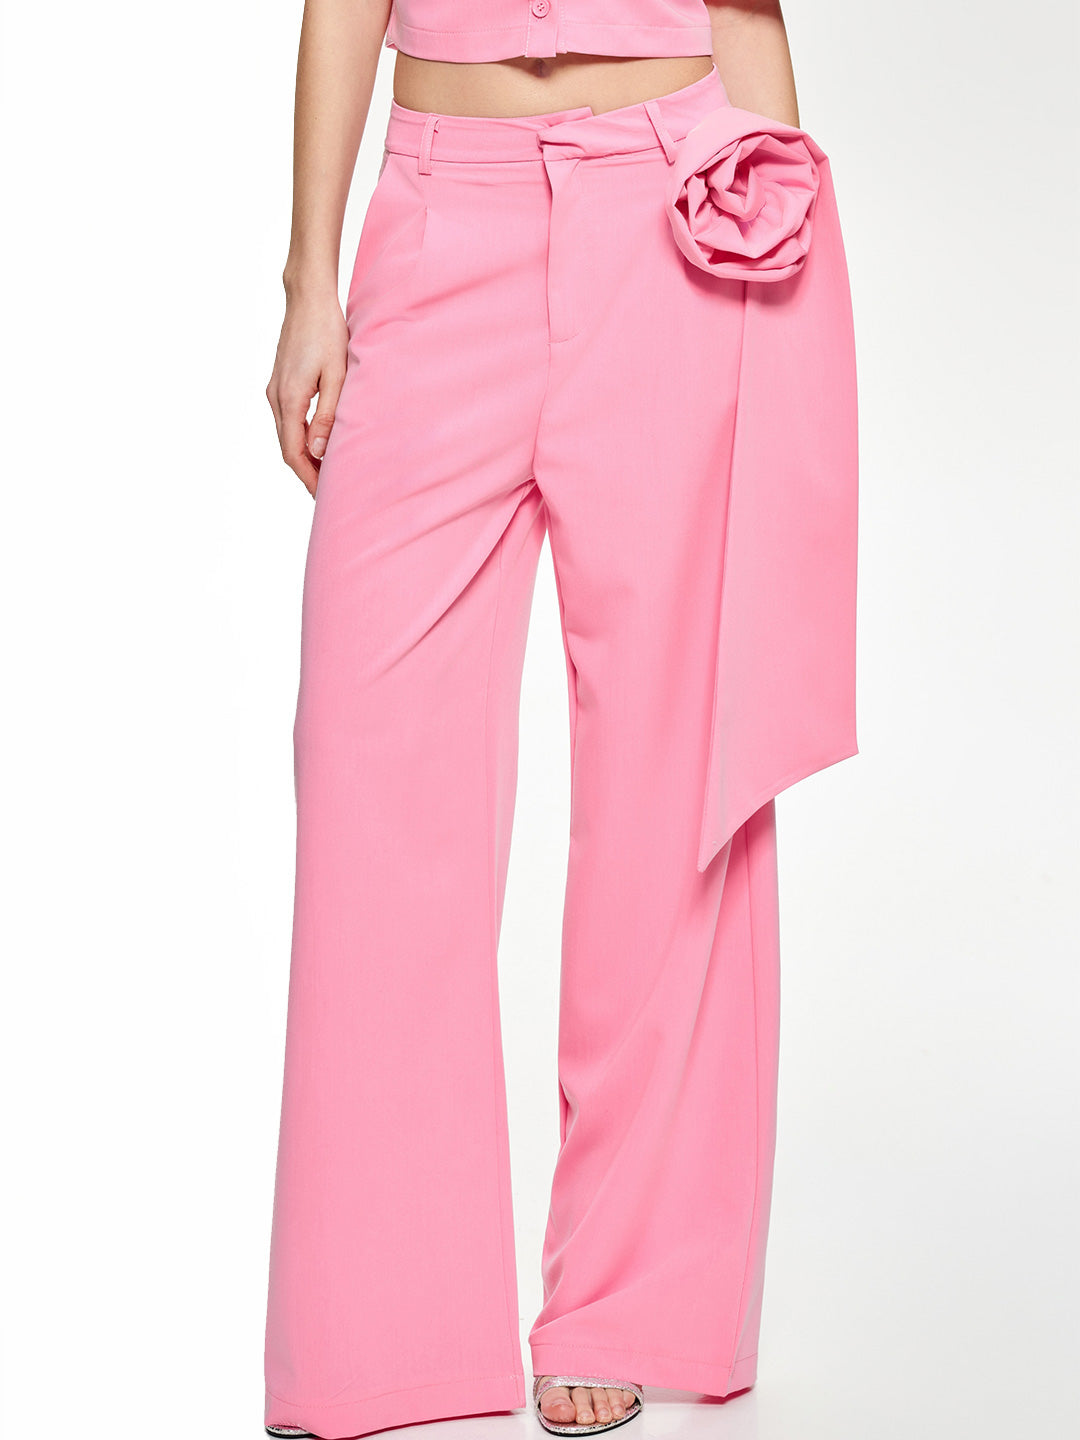 Lumina pantaloni rosa con applicazione fiore